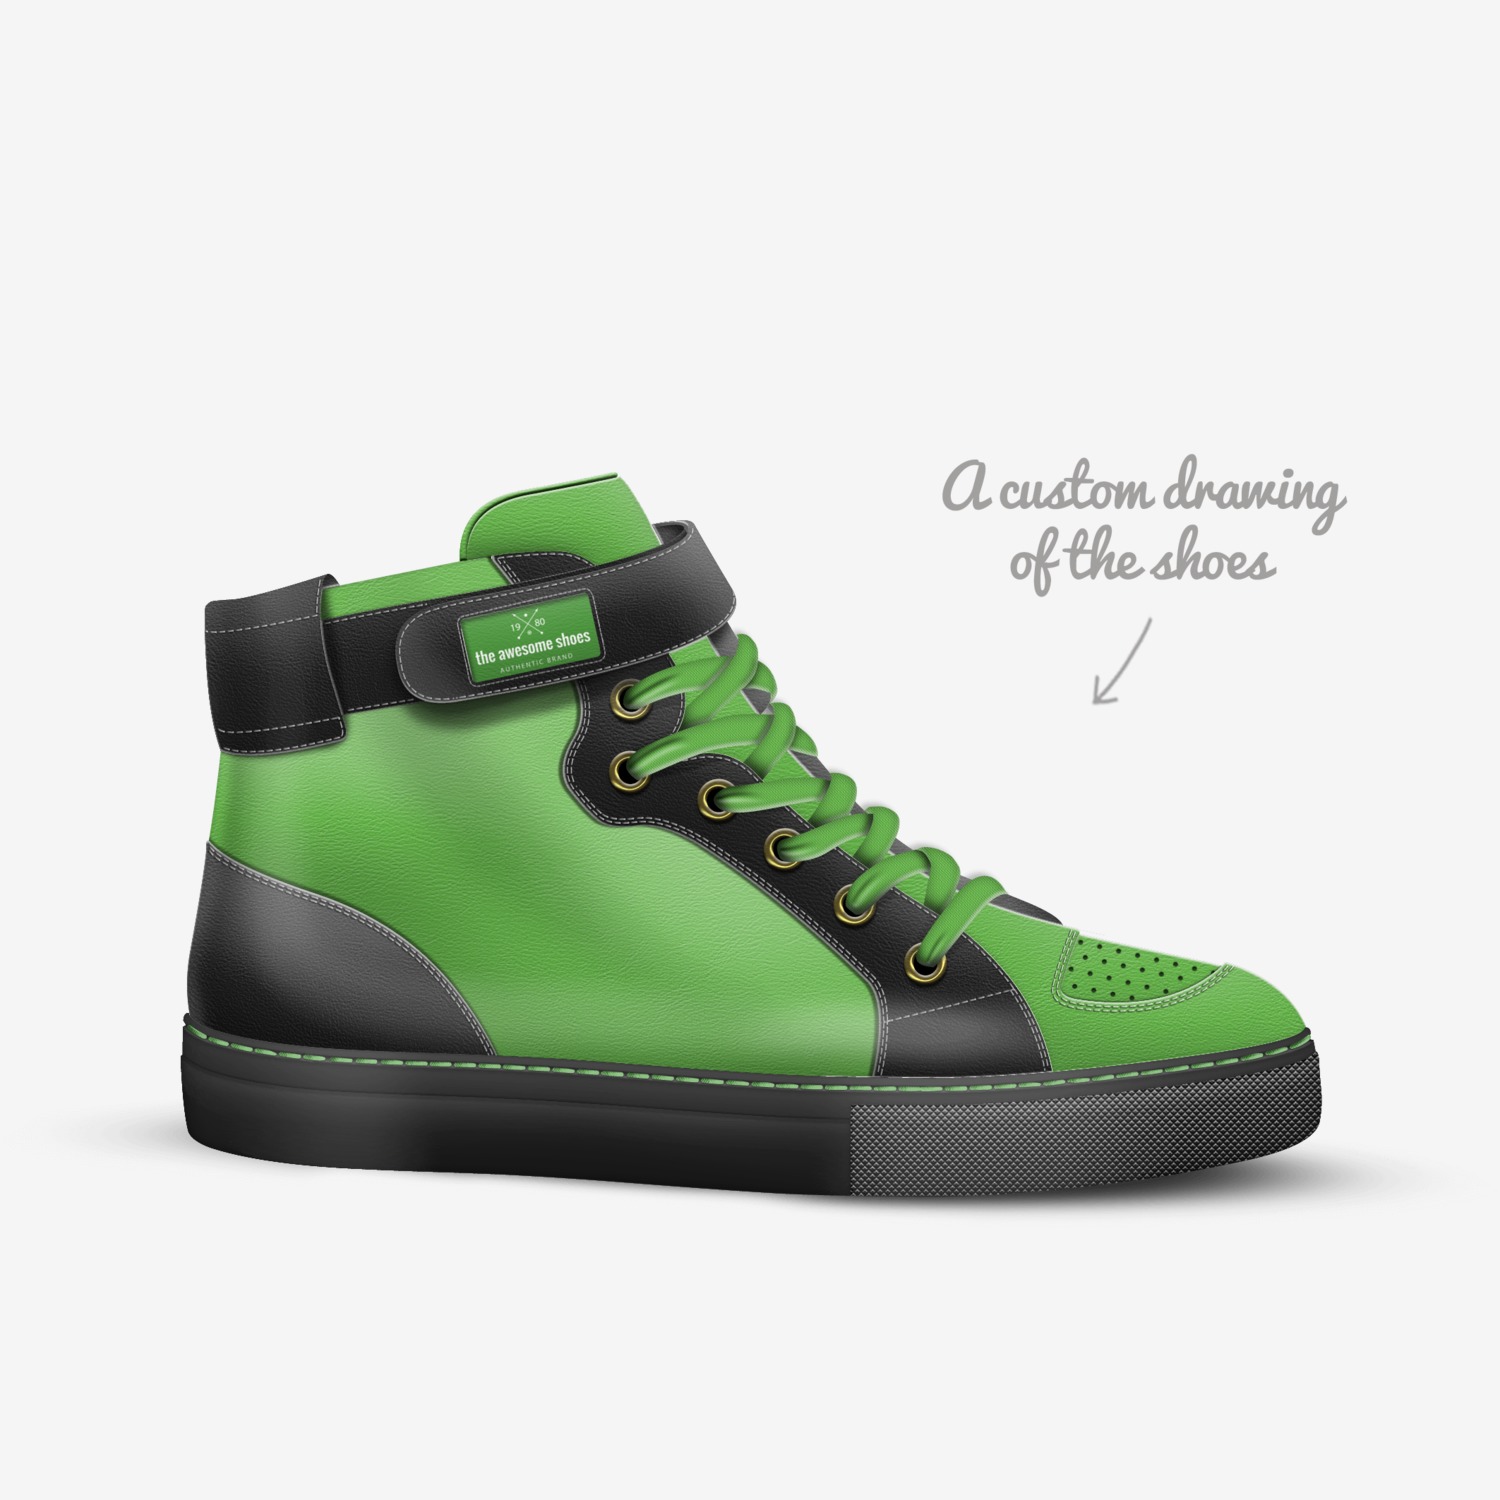 Comerciante Recurso conducir the awesome shoes | A Custom Shoe concept by Leya Deyoung